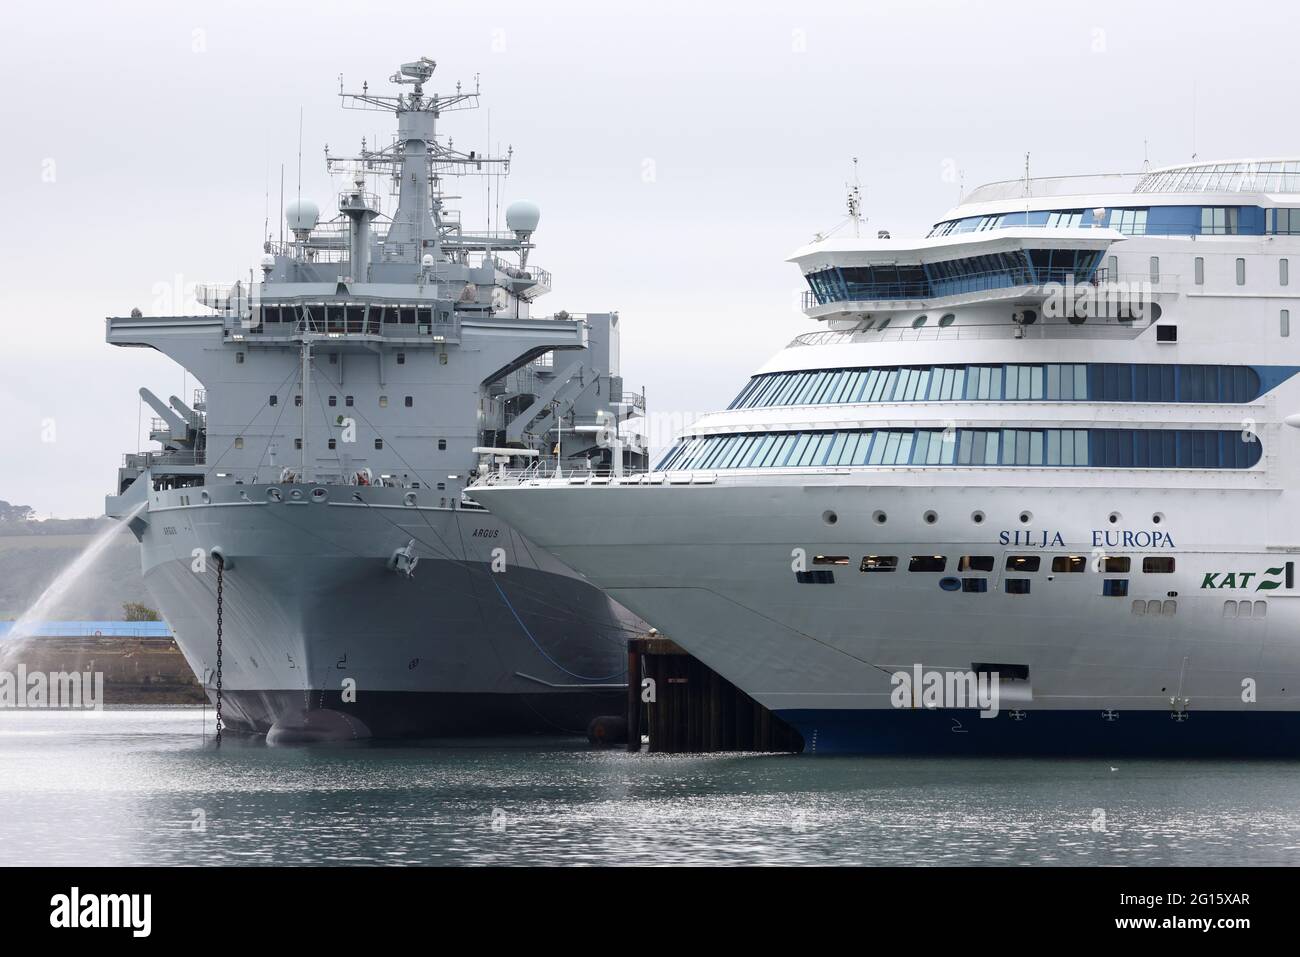 Das Kreuzfahrtschiff „Silja Europa“, das während des G7-Gipfels Polizeibeamte beherbergen wird, ist am 5. Juni 2021 in Falmouth Harbour, Cornwall, Großbritannien, angedockt. REUTERS/Tom Nicholson Stockfoto